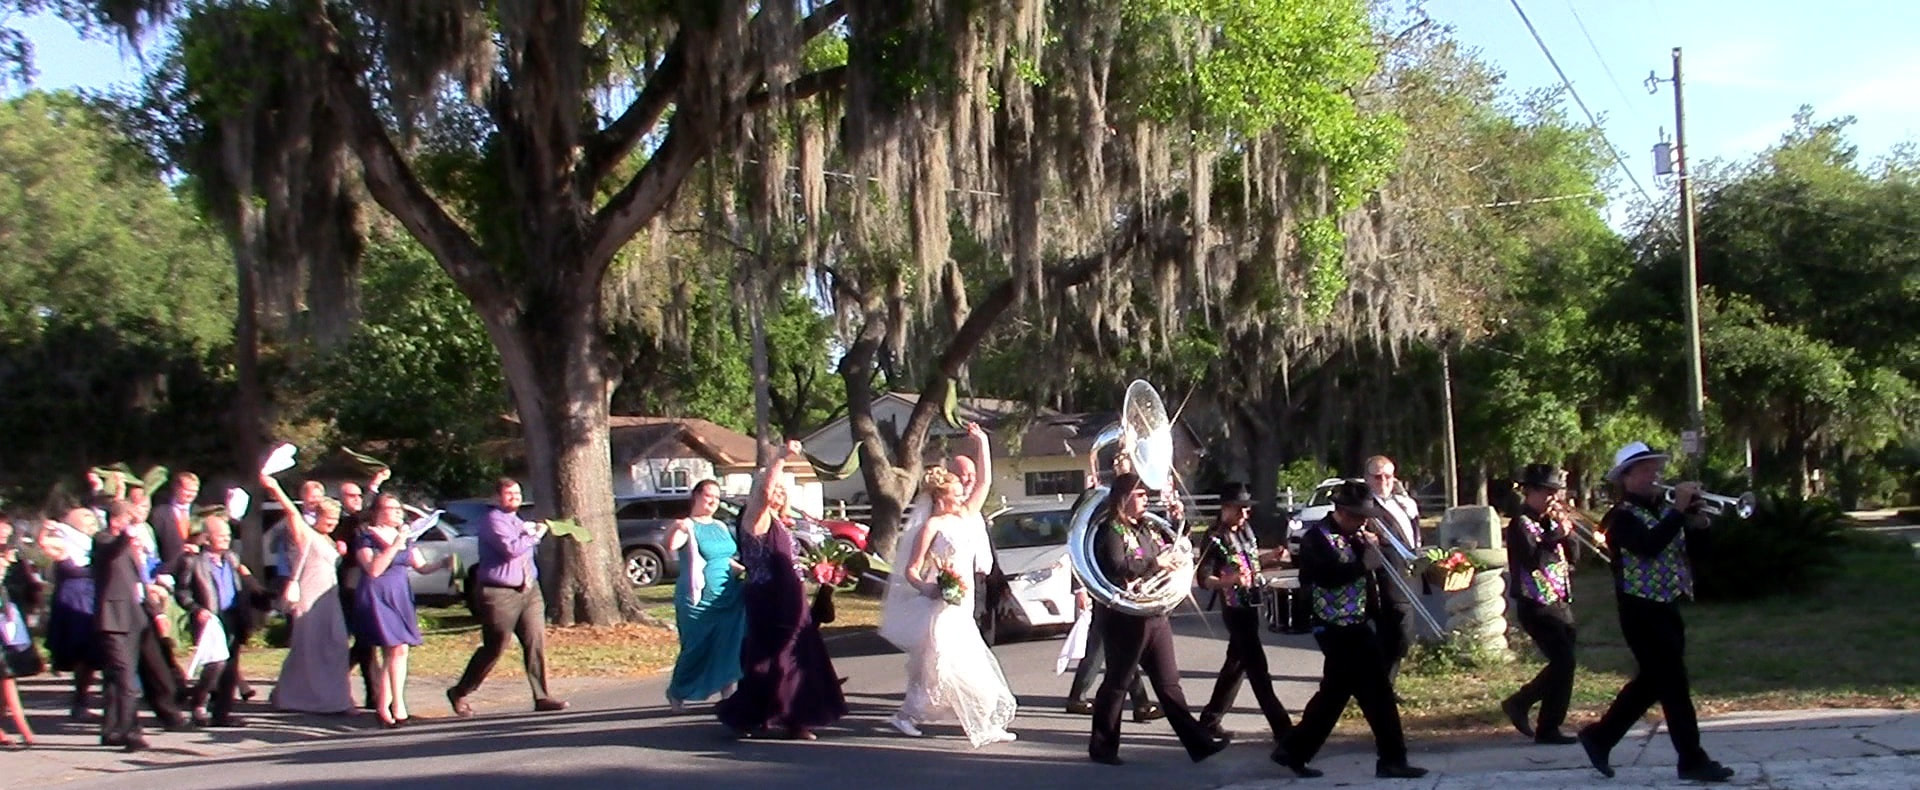 Second Line Band, Wedding parade, Brass Band, Second line Weddings, Orlando, Florida, Winter Park, Maitland
